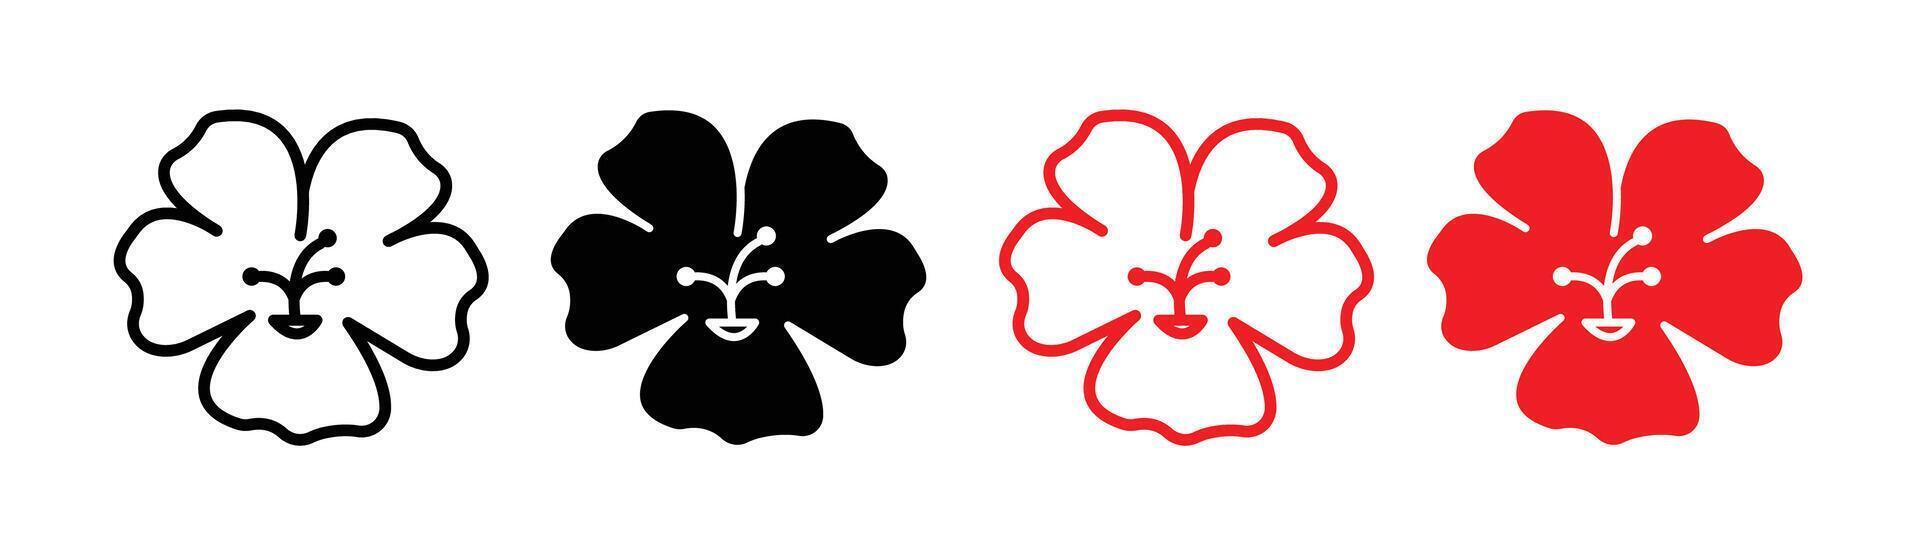 Hawaiian flower icon vector